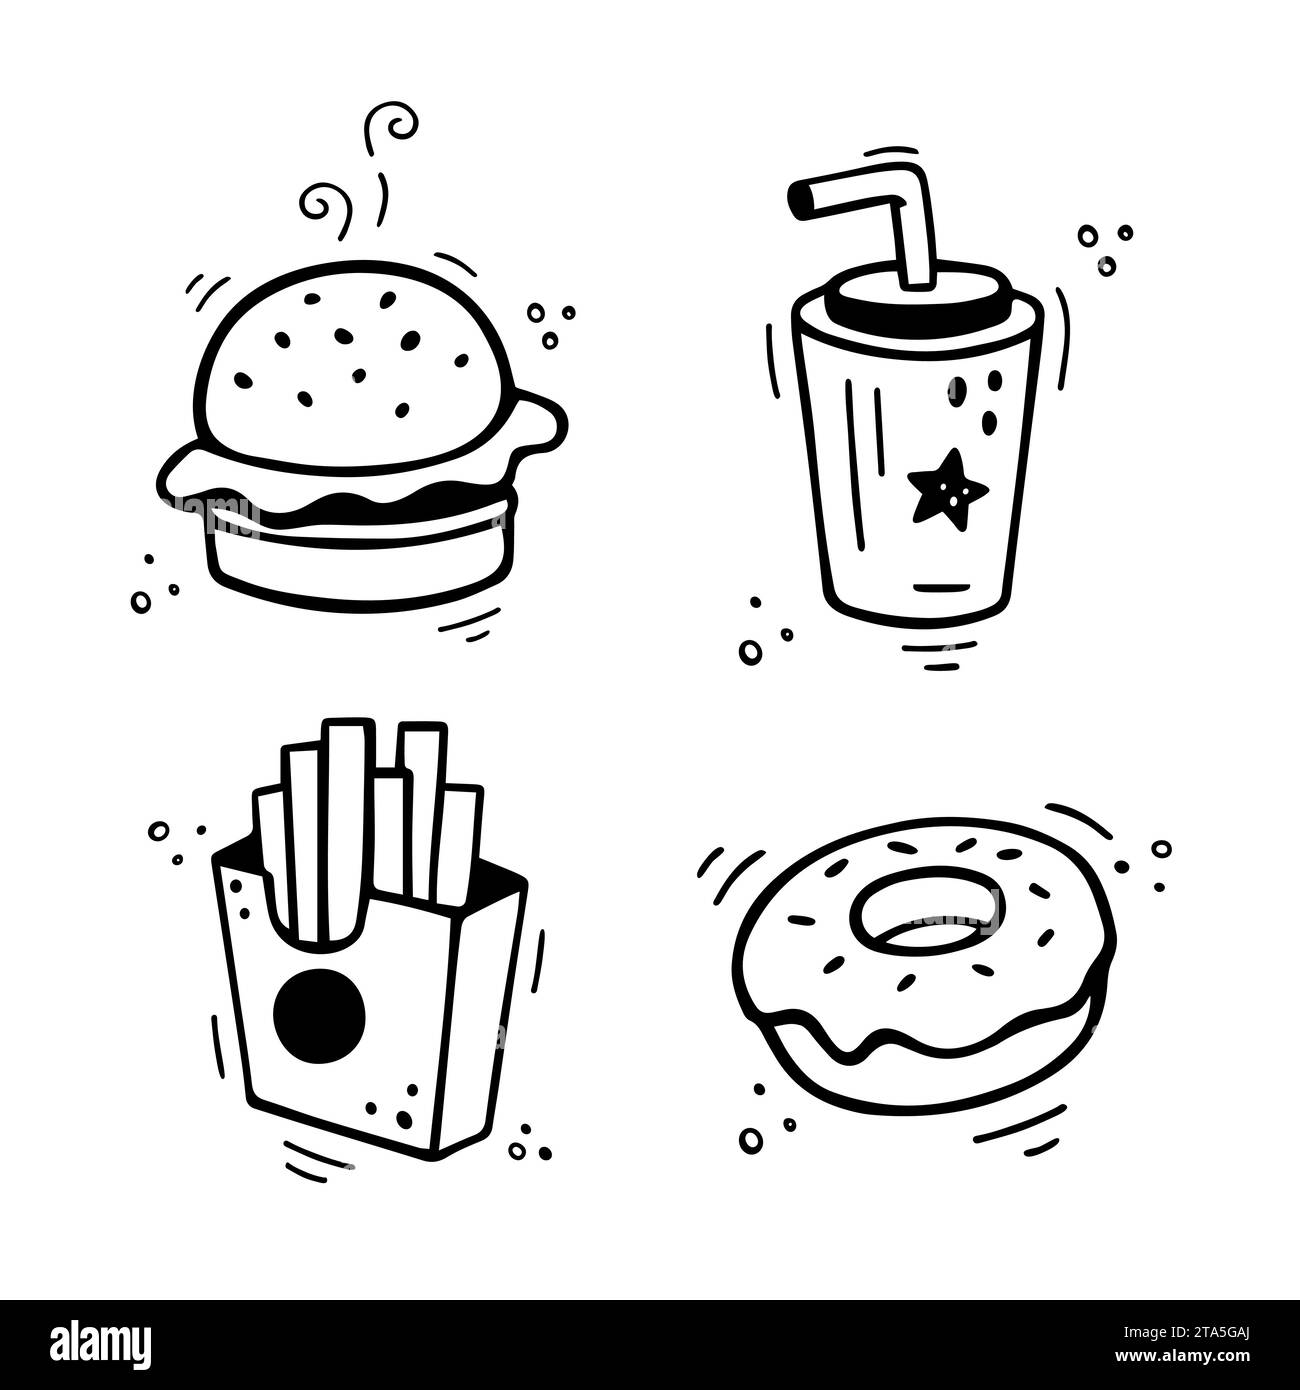 Ensemble d'icônes de restauration rapide - Burger, frites, tasse en papier avec boisson, tarte, beignet. Combinaison de fast-food tirée à la main. Style de croquis de doodle comique. Vecteur illu Illustration de Vecteur